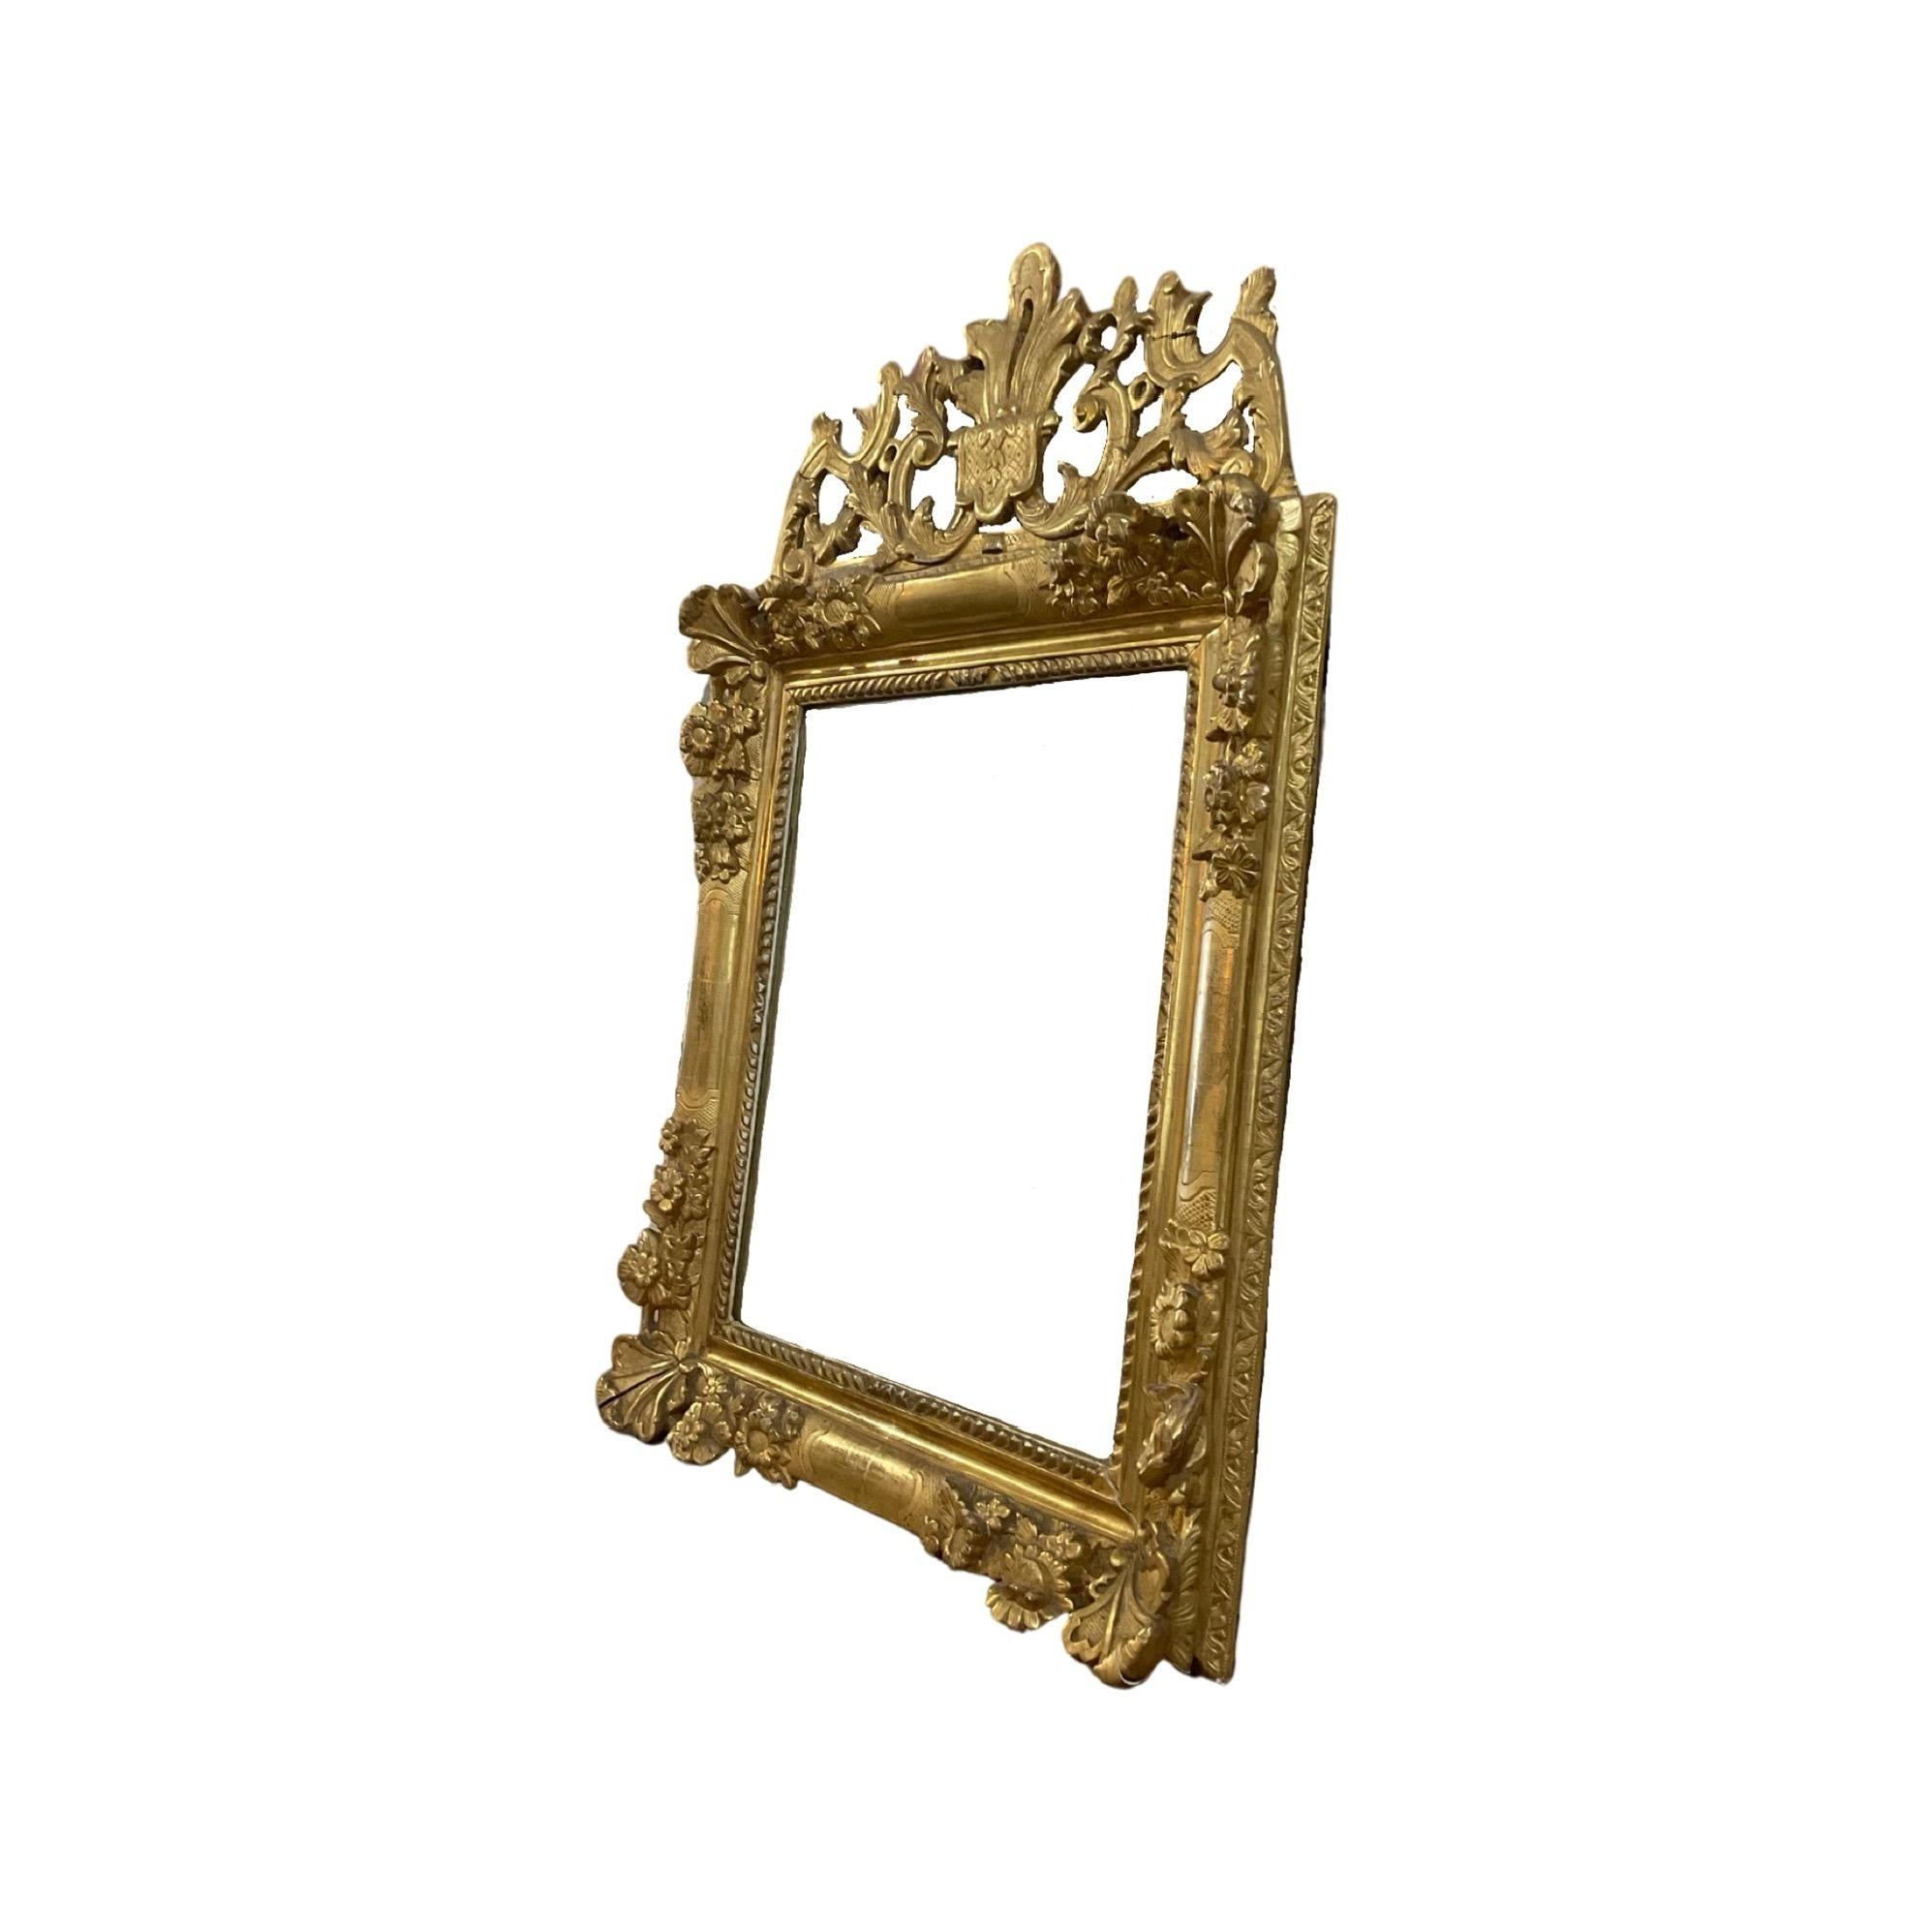 Spiegel im Stil Louis XVI. Der Spiegel ist aus Eichenholz gefertigt. Handgeschnitzter Gips mit Blattgoldauflage. Stammt aus Frankreich. CIRCA, 18. Jahrhundert. 

 